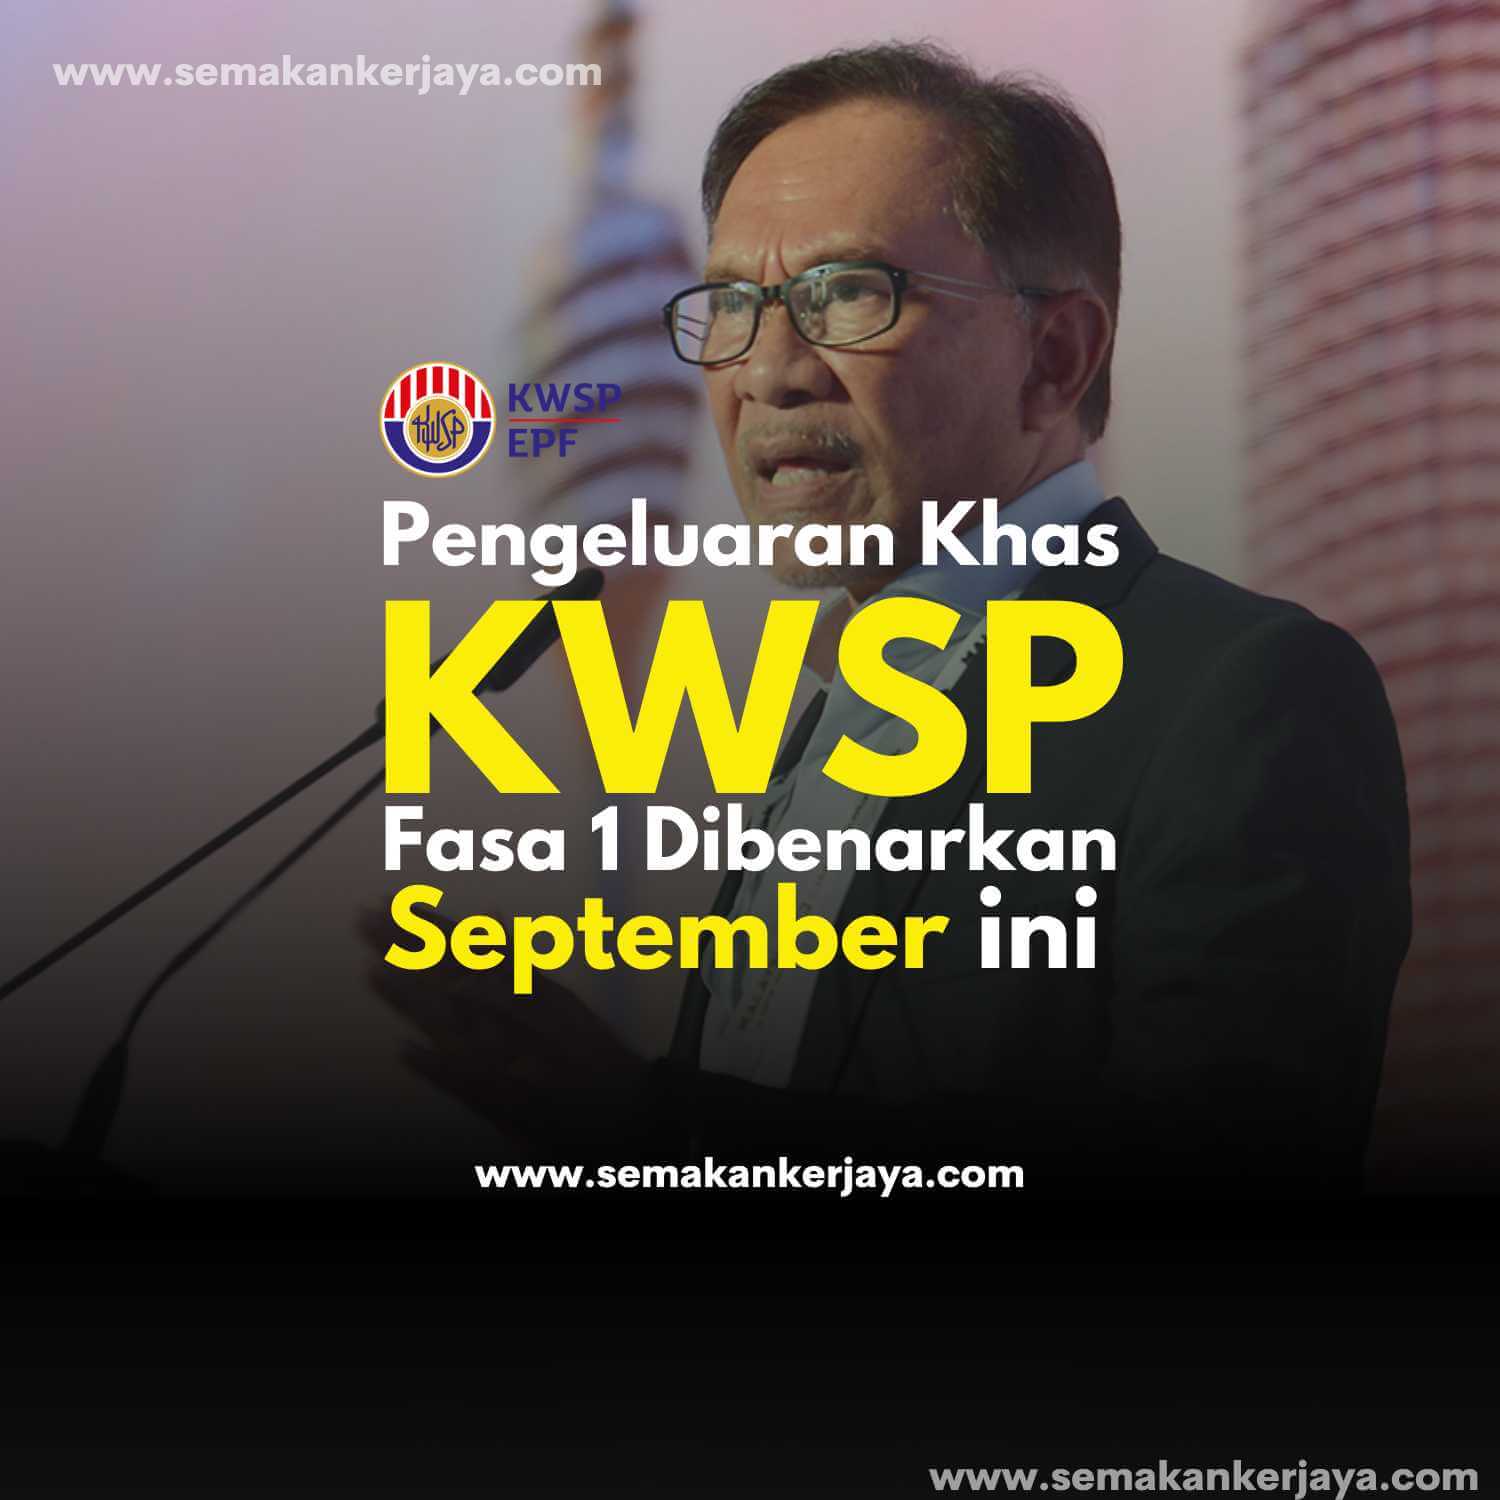 Pengeluaran Khas KWSP Fasa 1 Dibenarkan September Ini